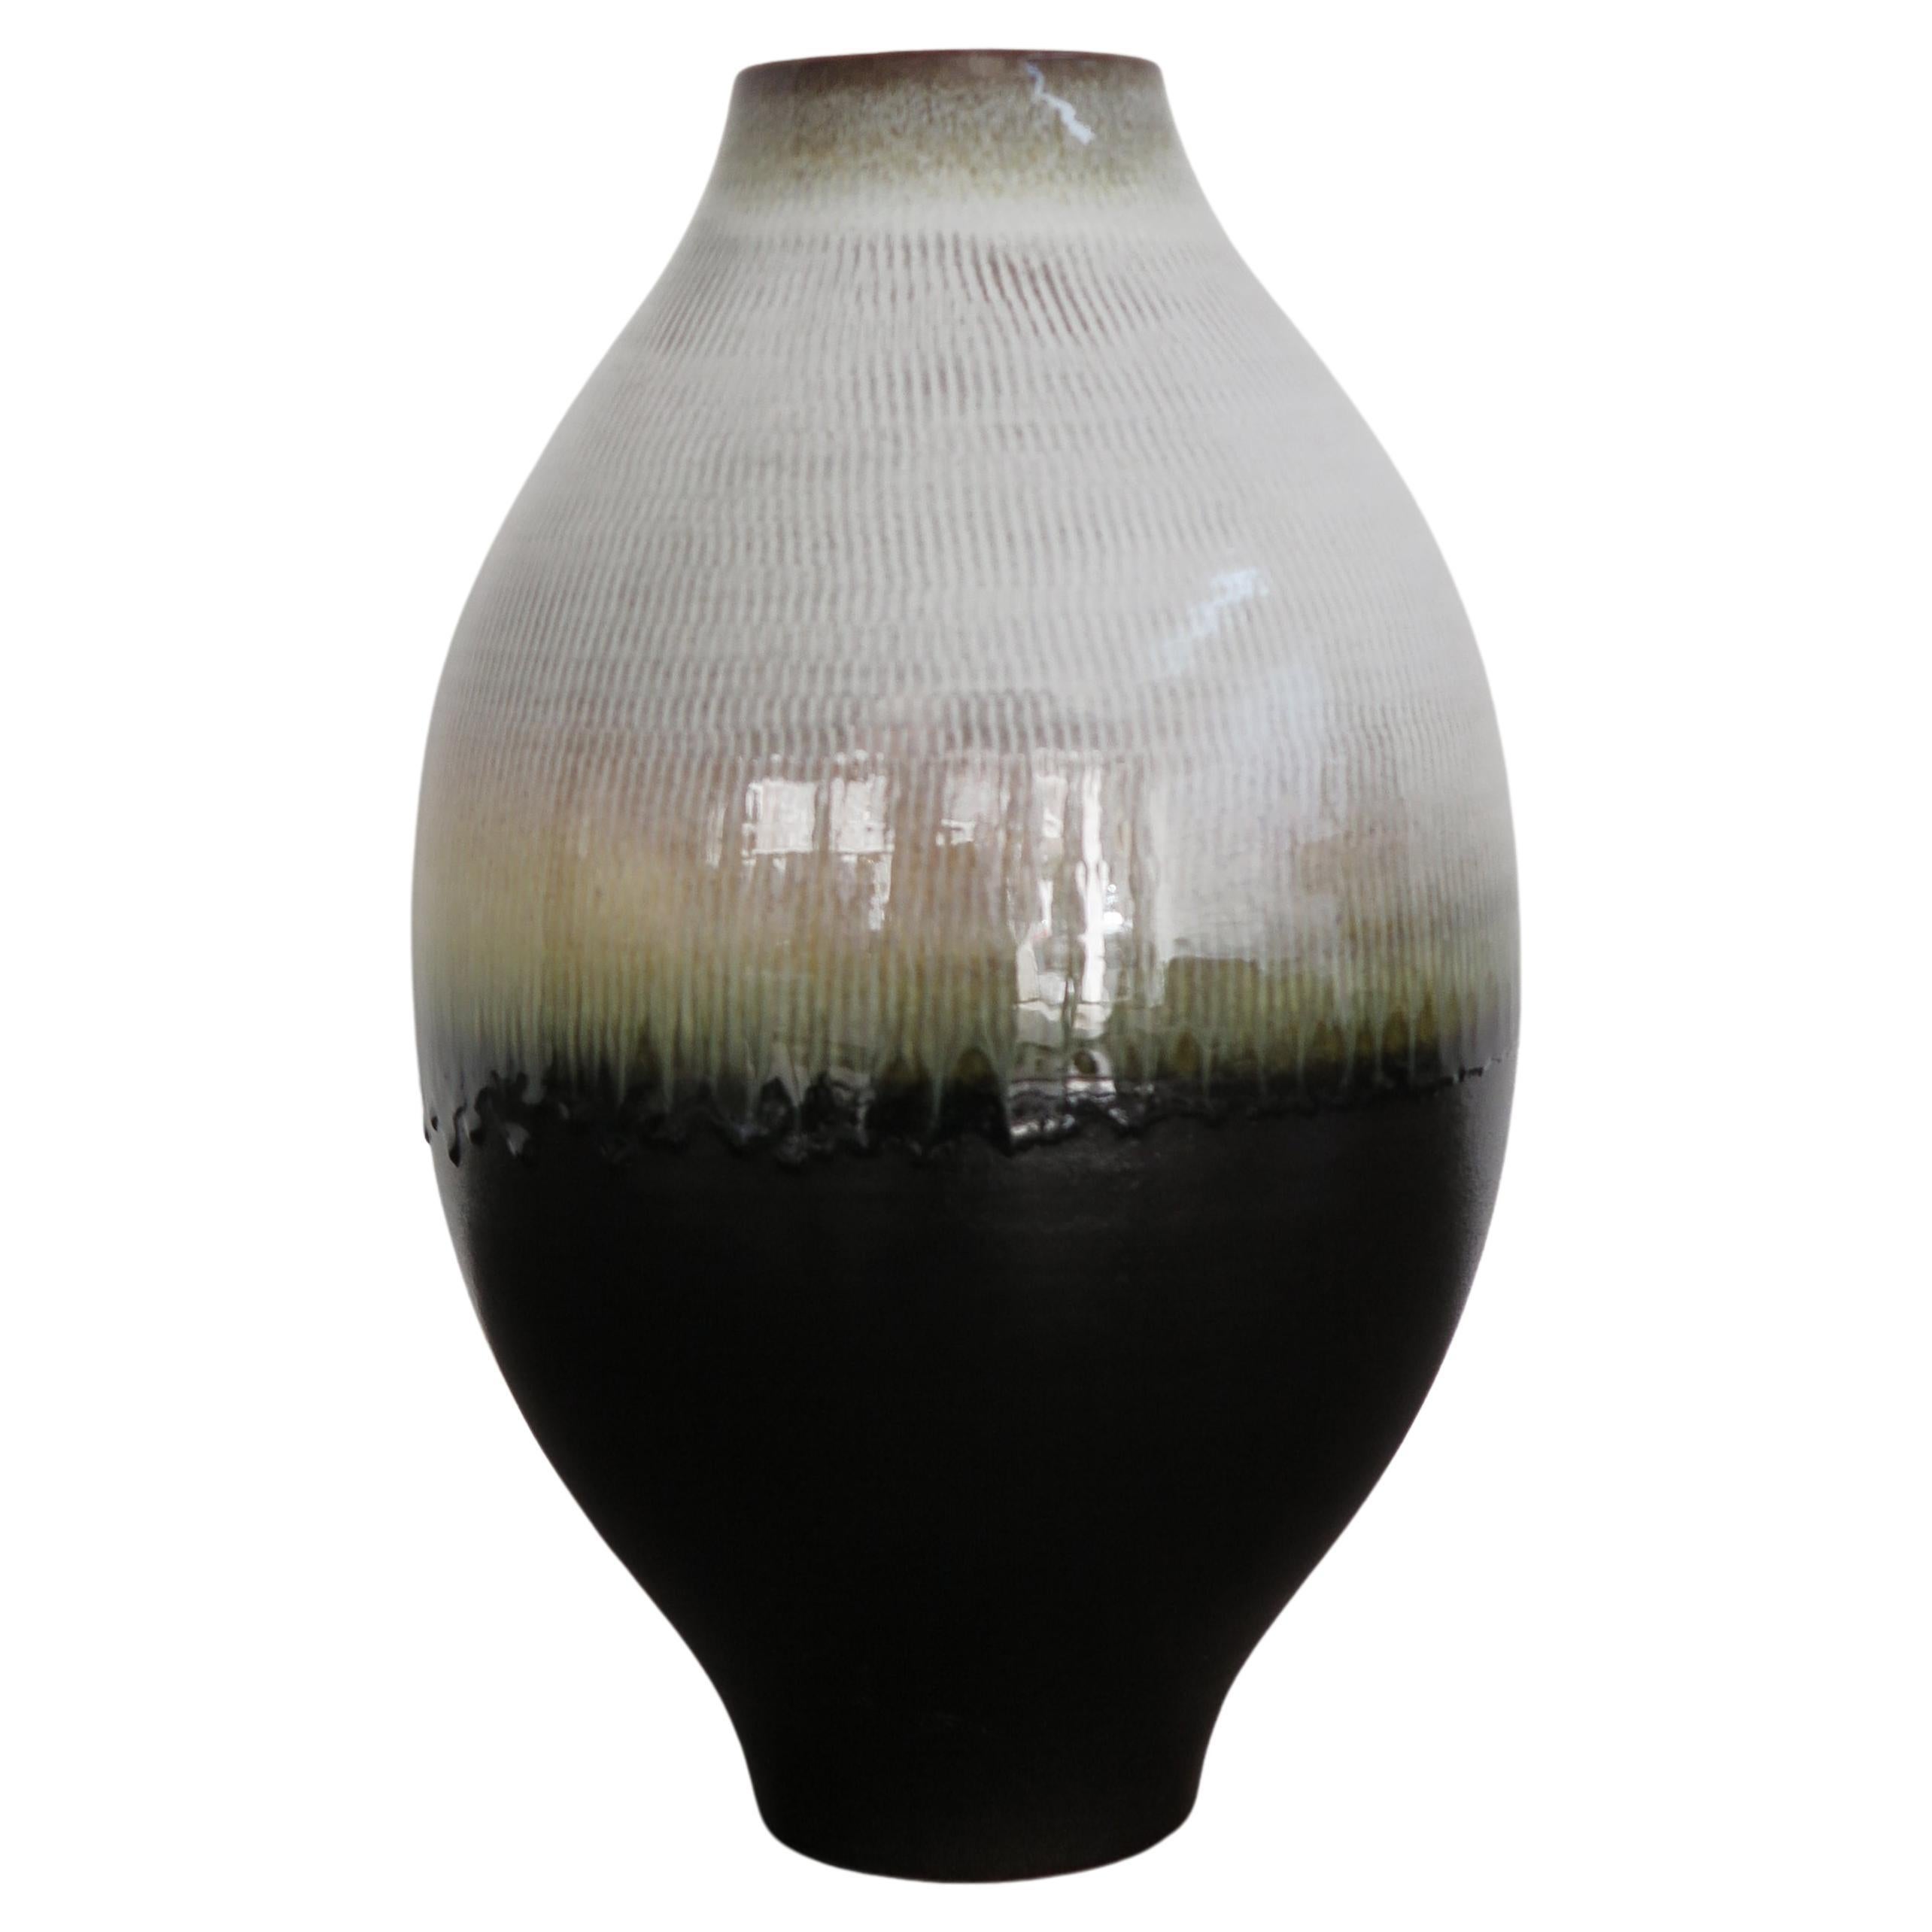 Italian Contemporary Artistic Ceramic Vase by Amaaro, 2022